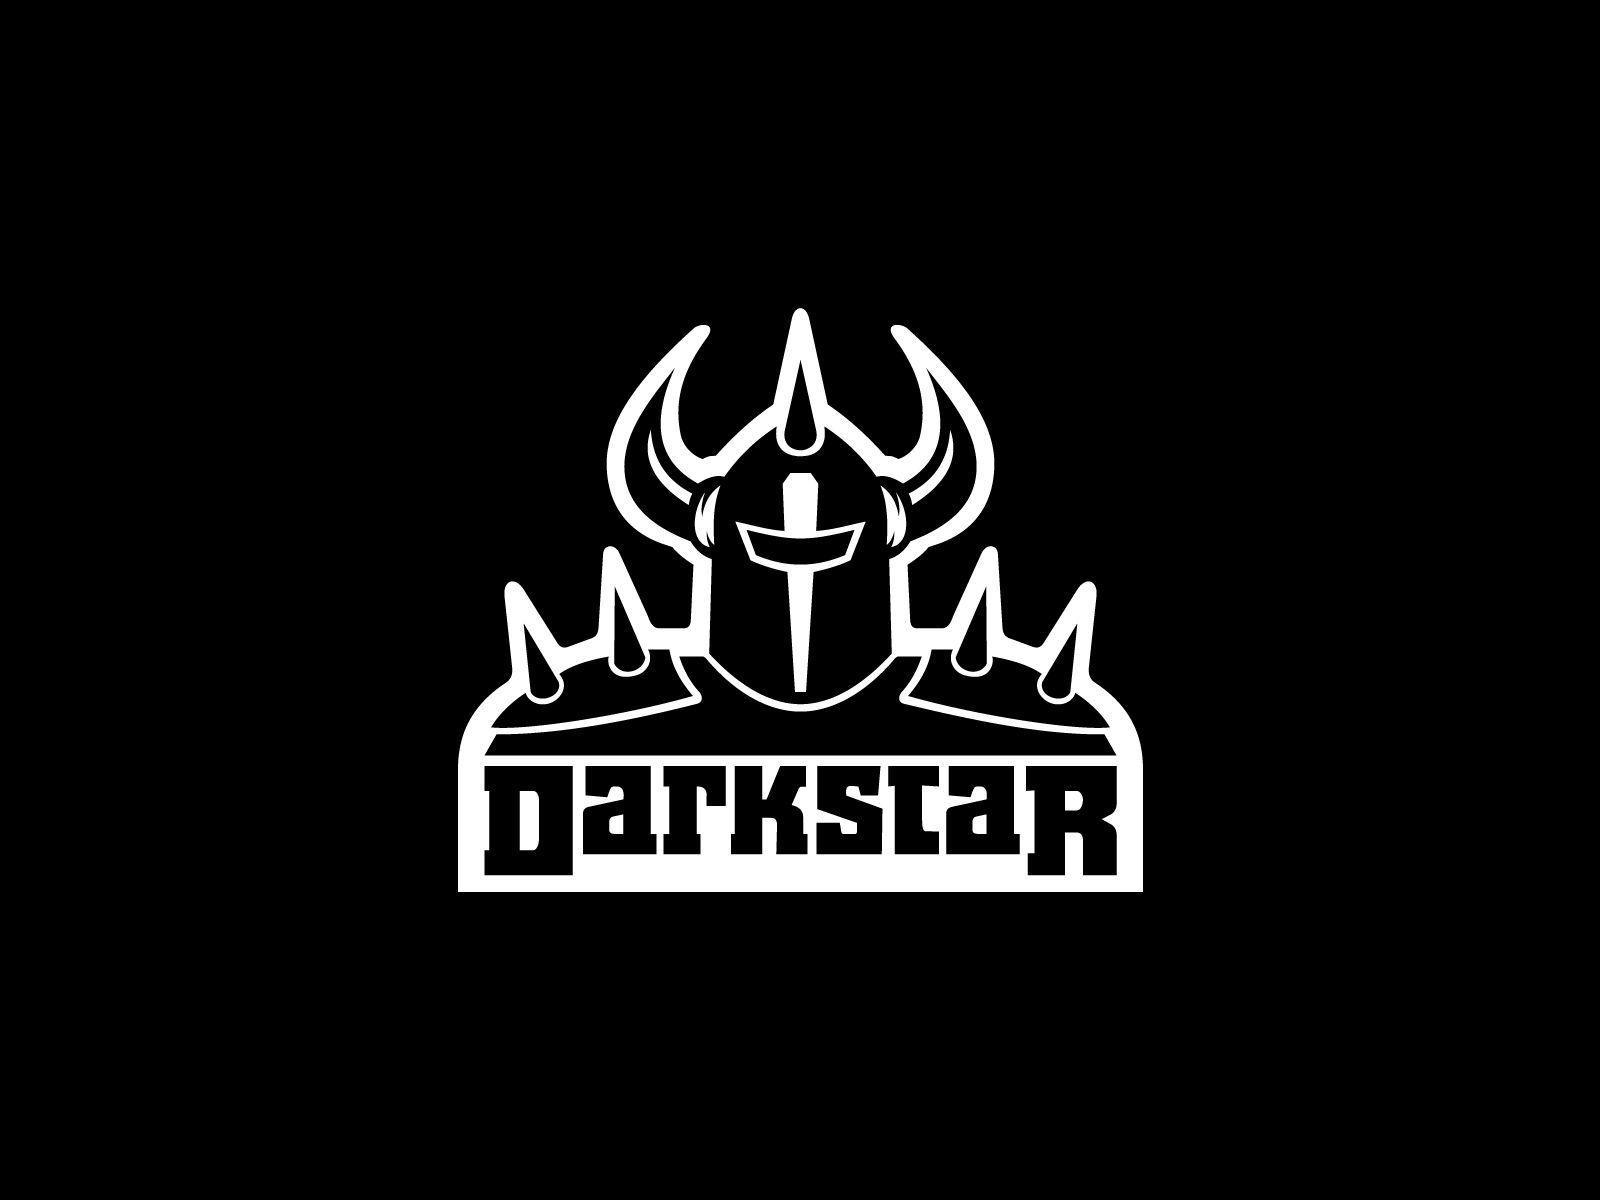 The Darkstar Logo - Darkstar Logo Wallpapers - Wallpaper Cave